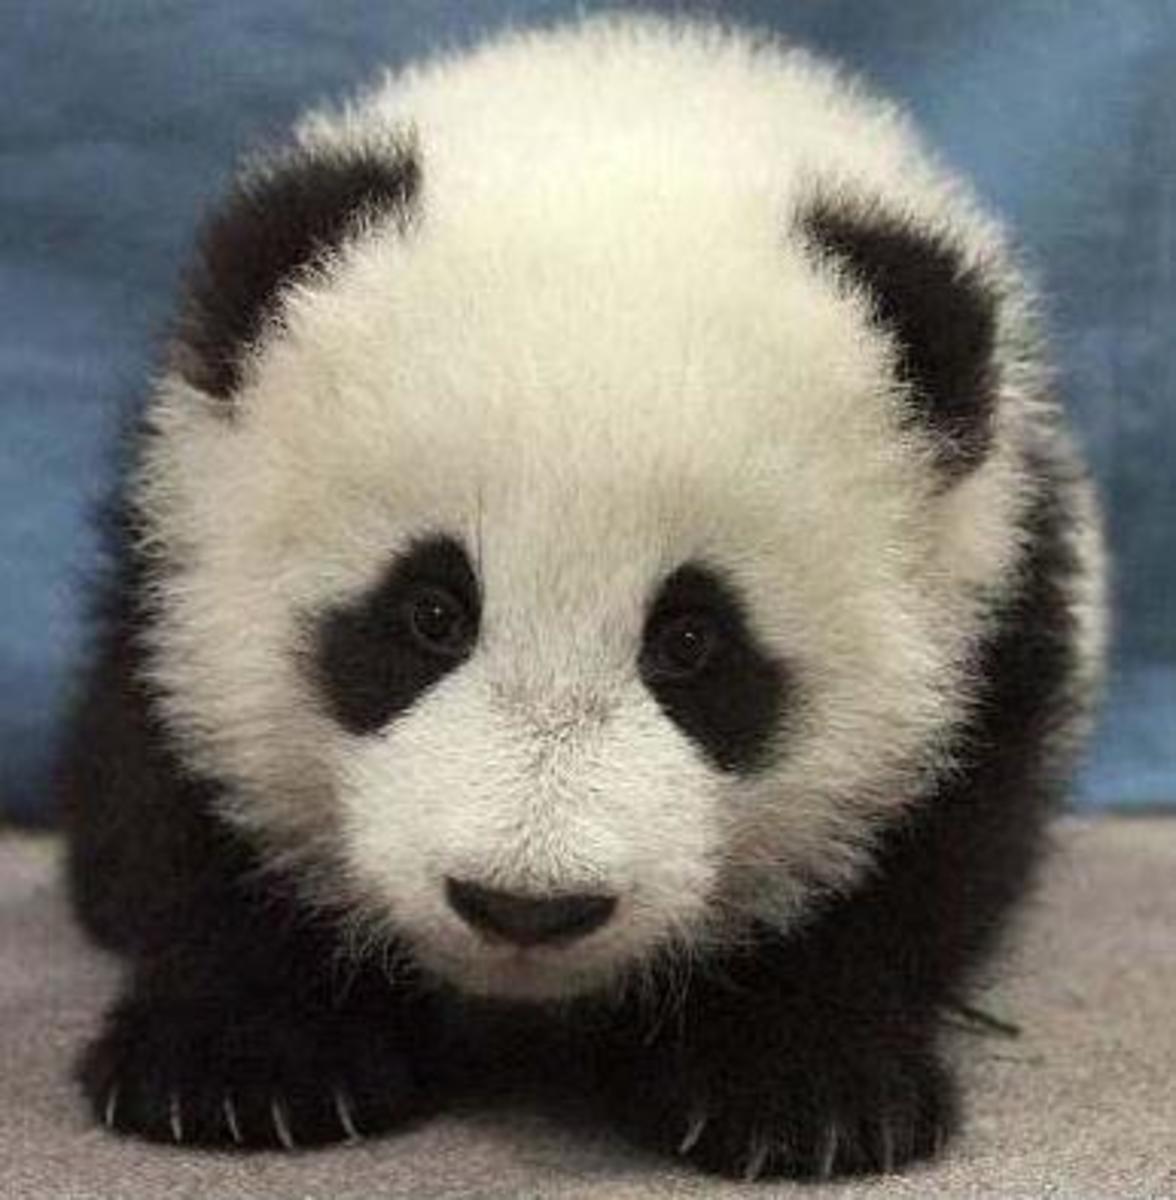 Cute panda baby